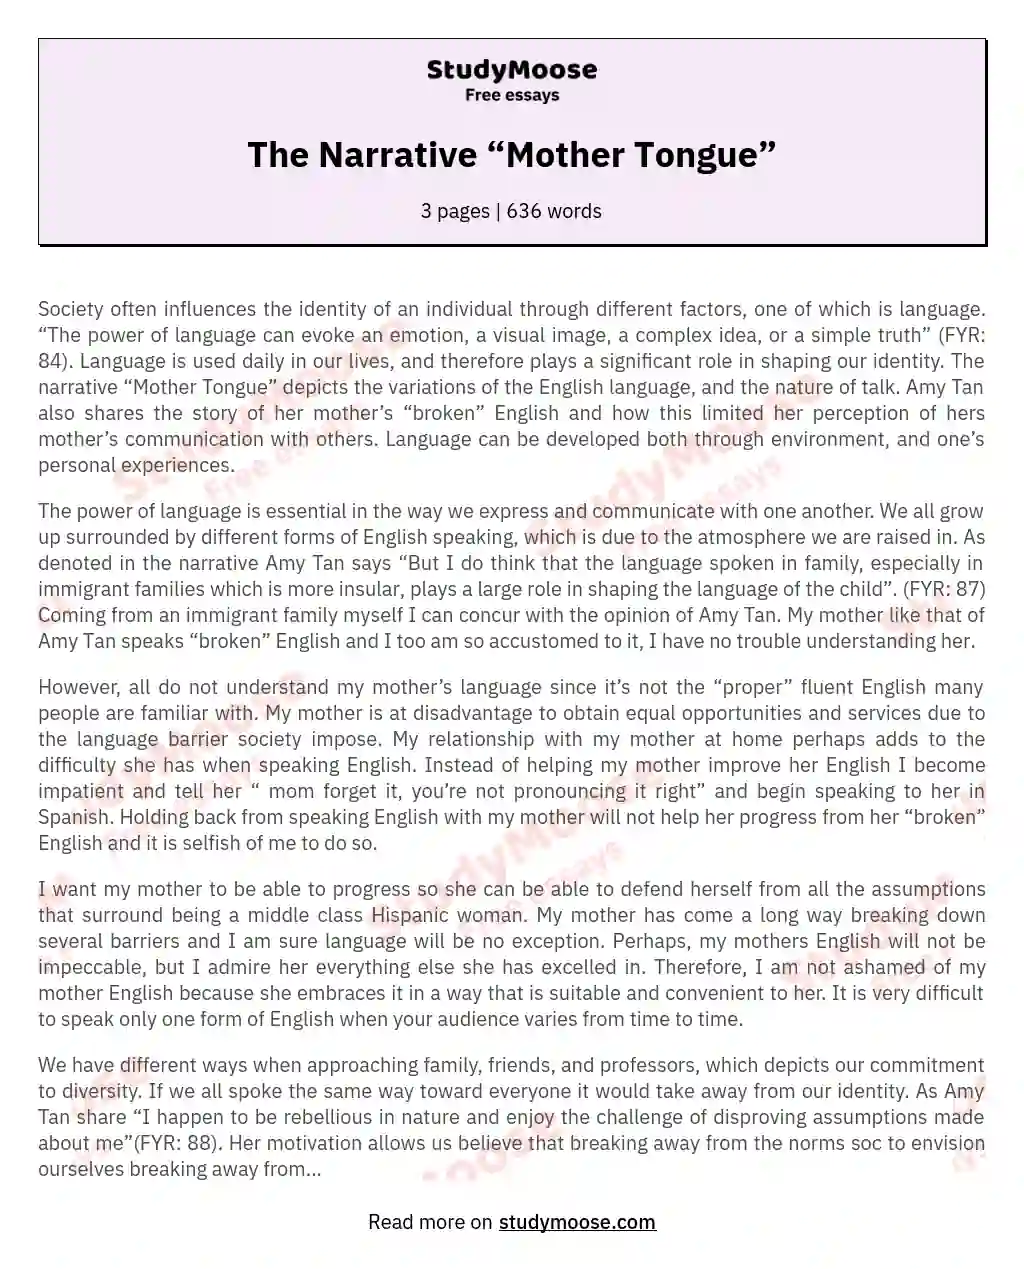 The Narrative “Mother Tongue” essay